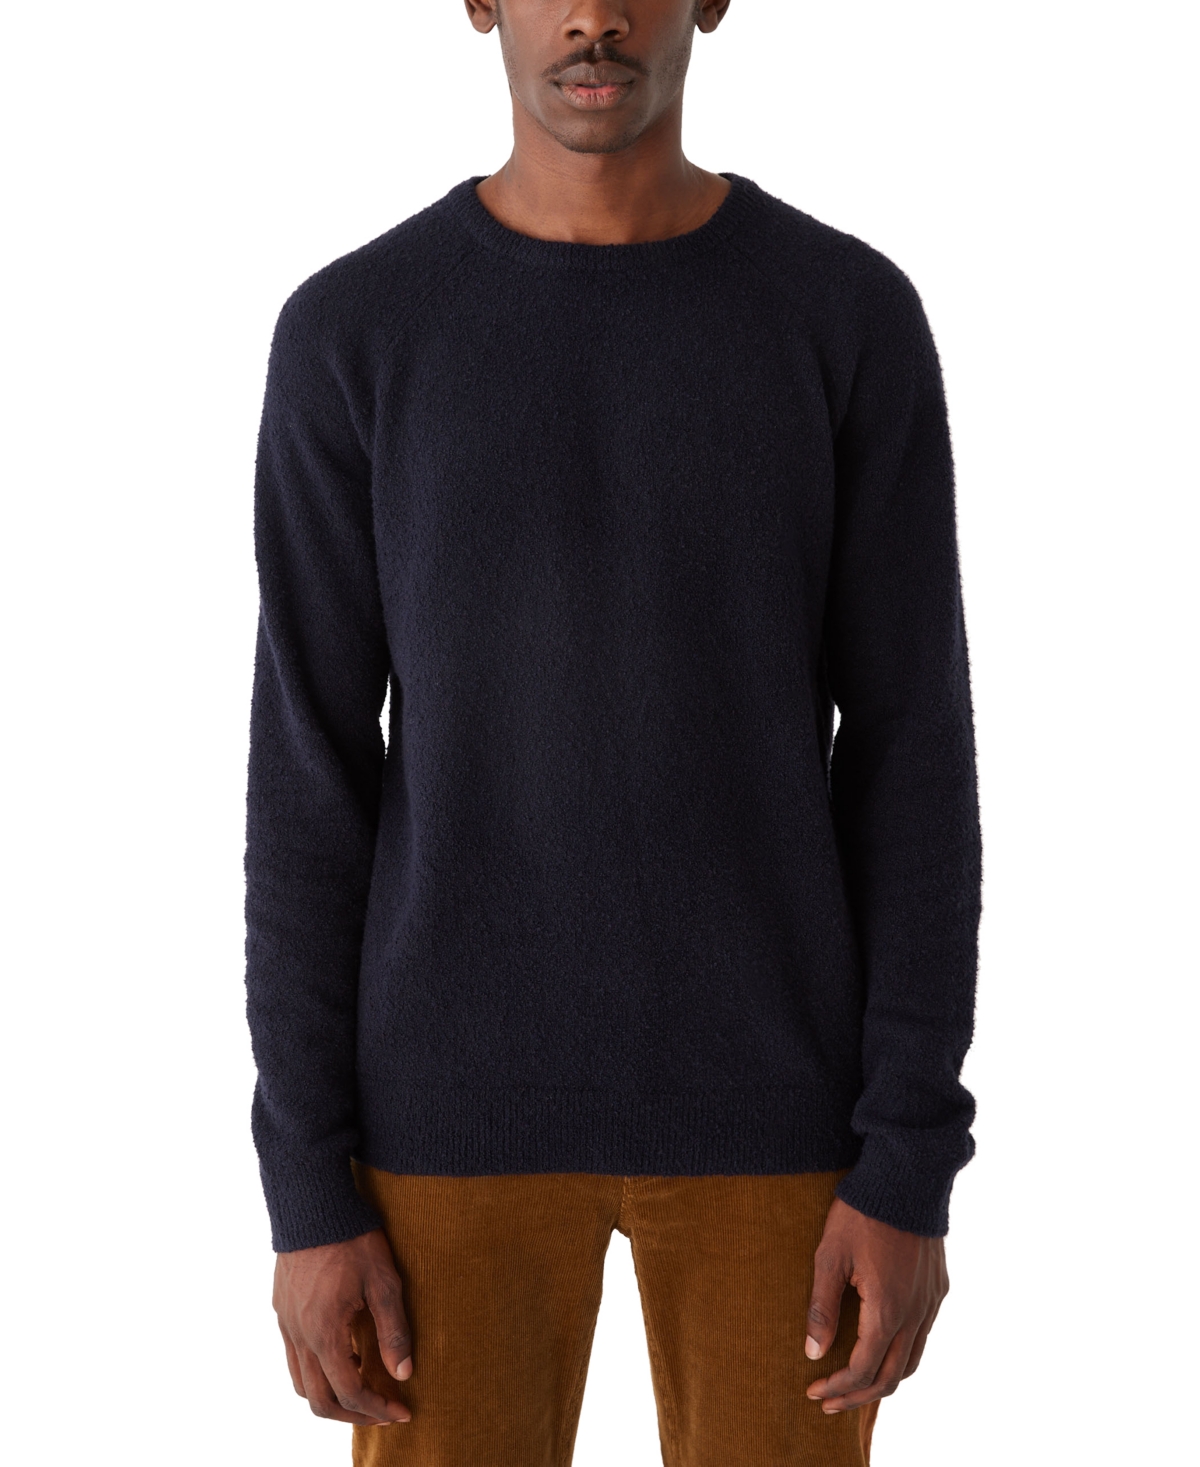 Men's Textured Crewneck Long Sleeve Sweater - Deep Well